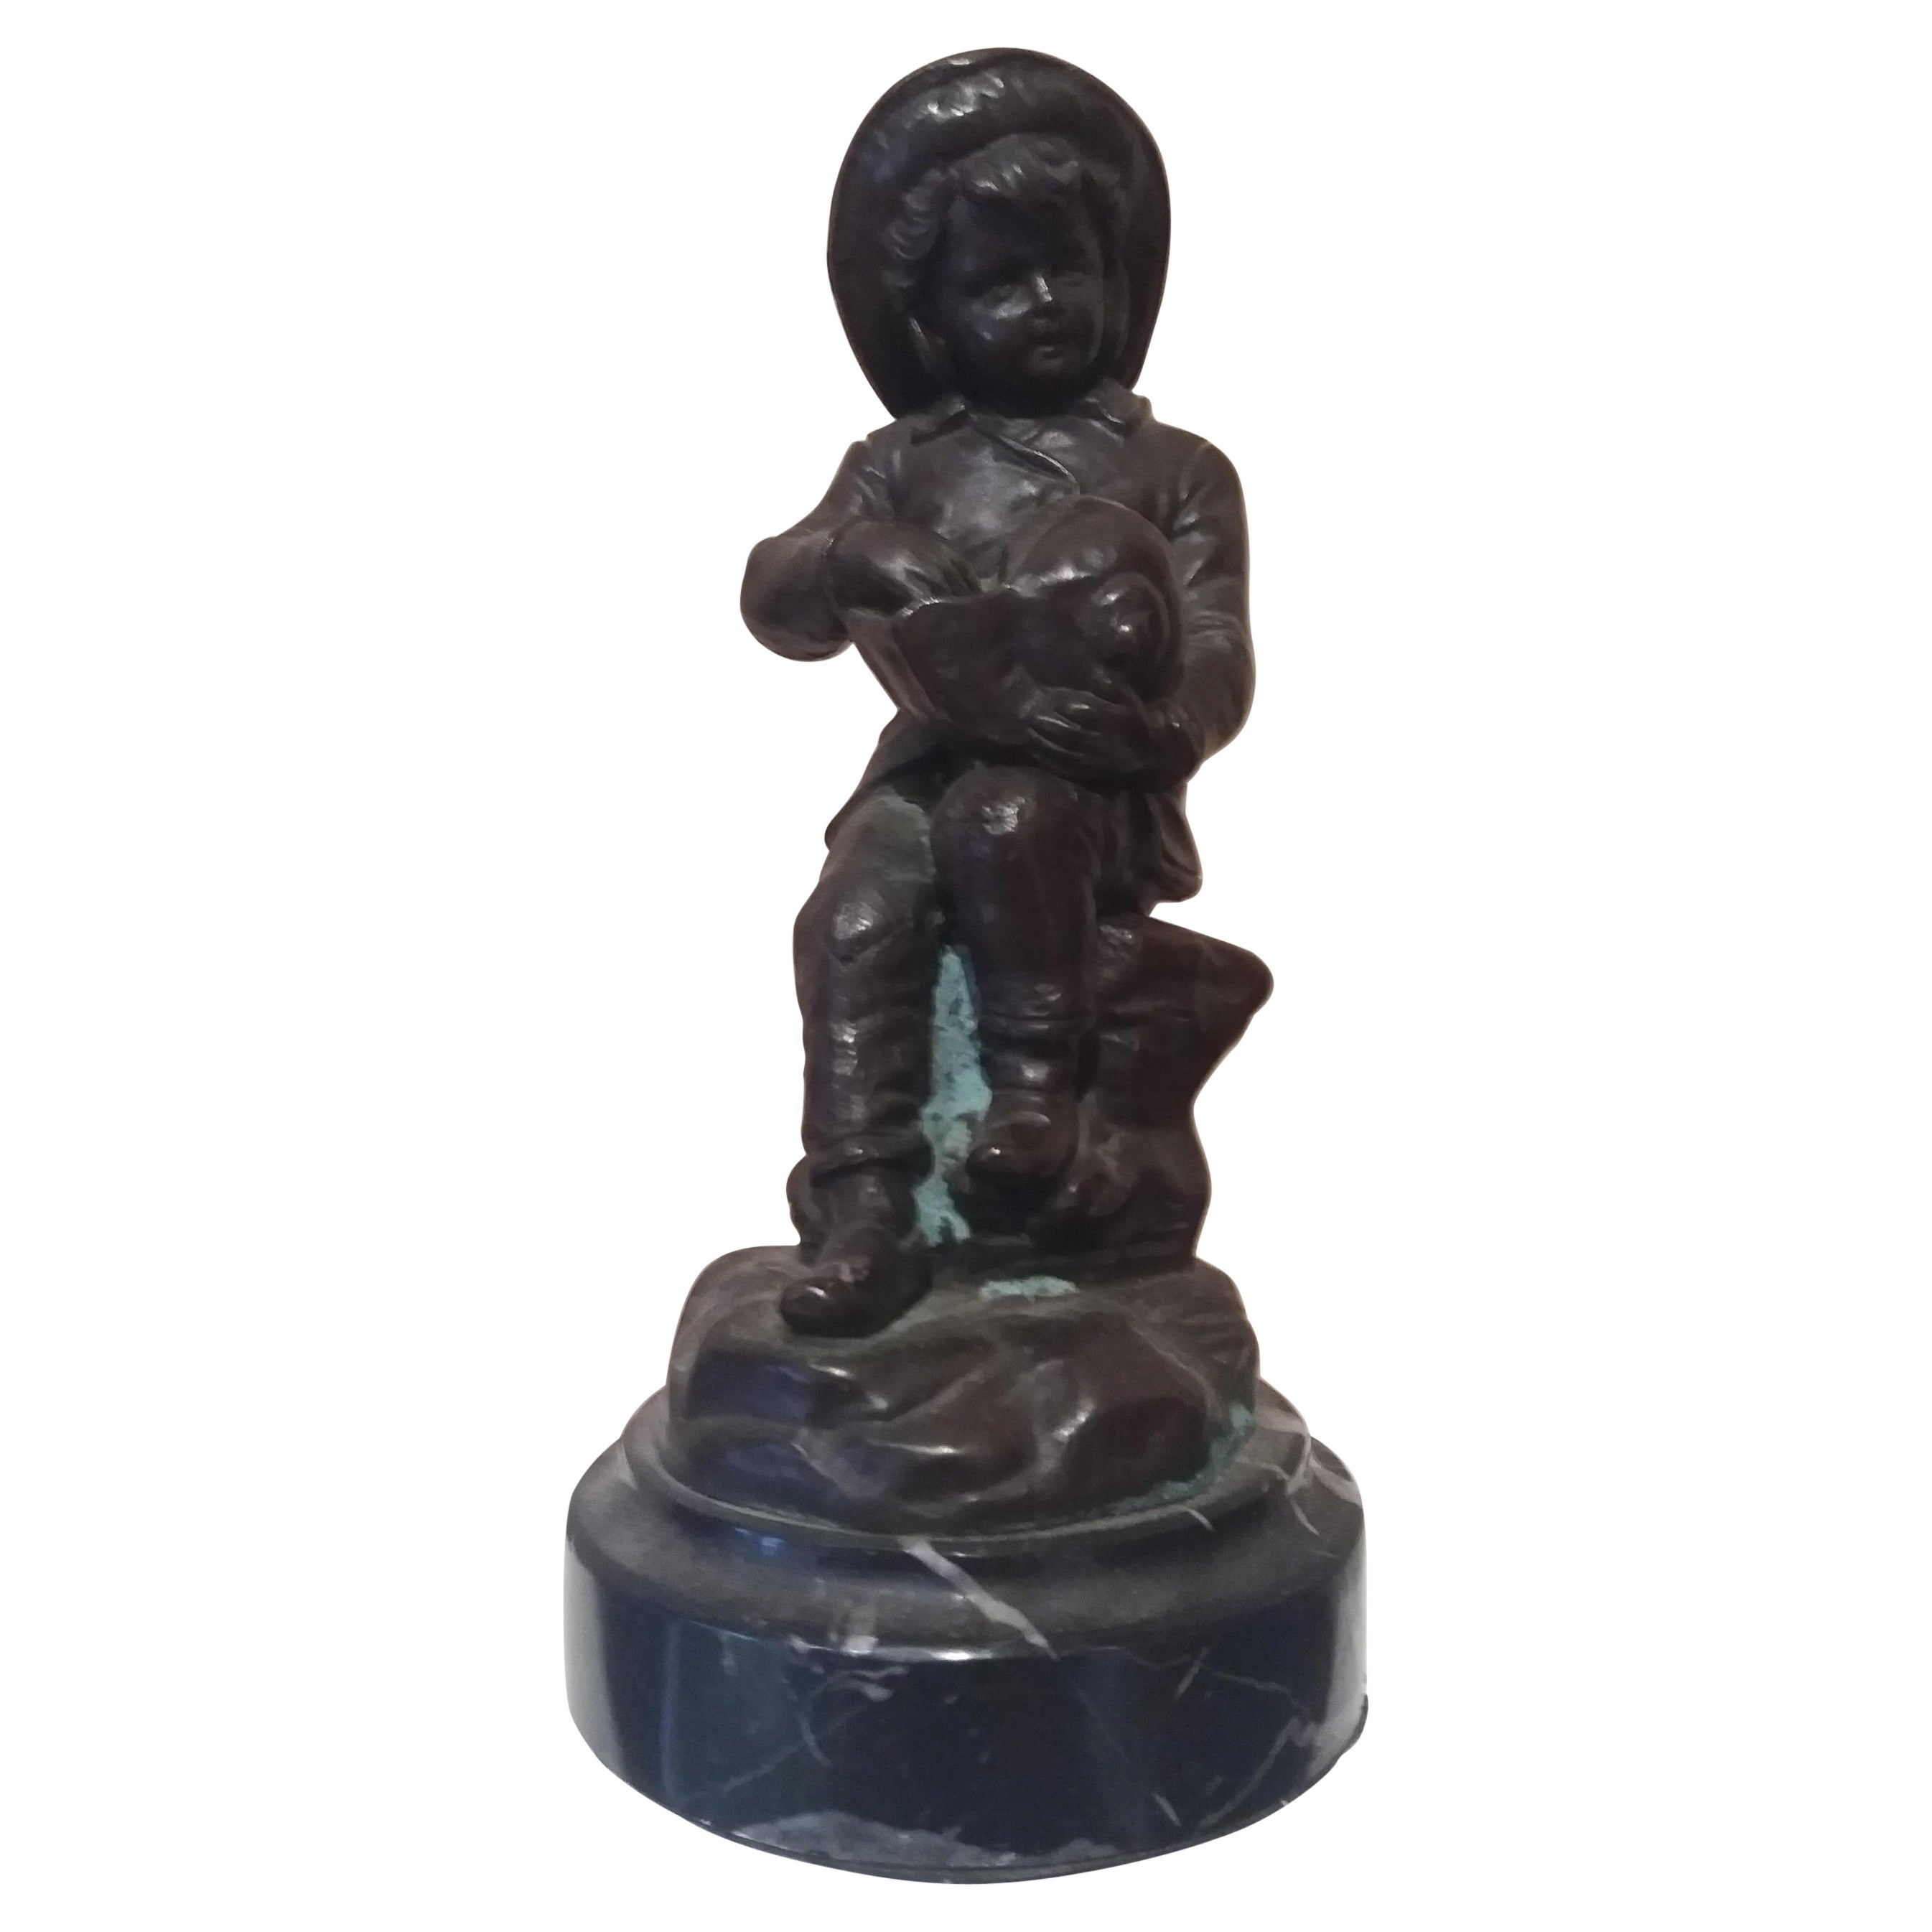  Bollel  Enfant et coquille de conque. Sculpture originale en bronze multiple